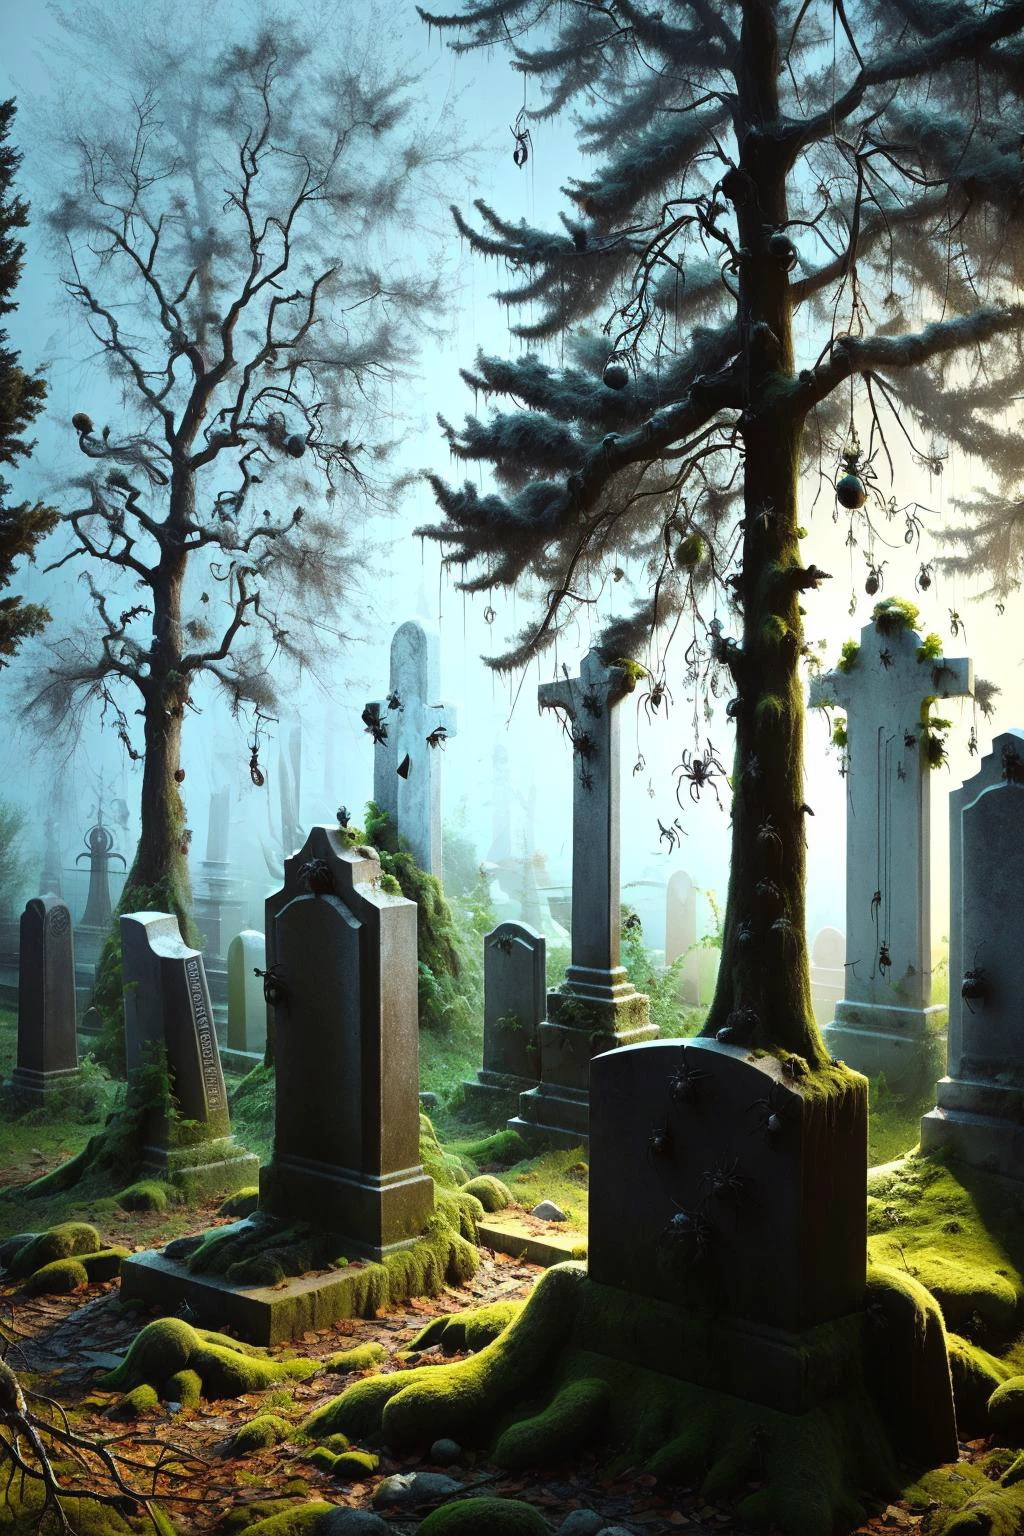 Un cementerio brumoso por la noche, con lápidas antiguas y árboles nudosos, ais-spiderz arrastrándose sobre las tumbas y colgando de las ramas, creando un ambiente escalofriante y fantasmal 